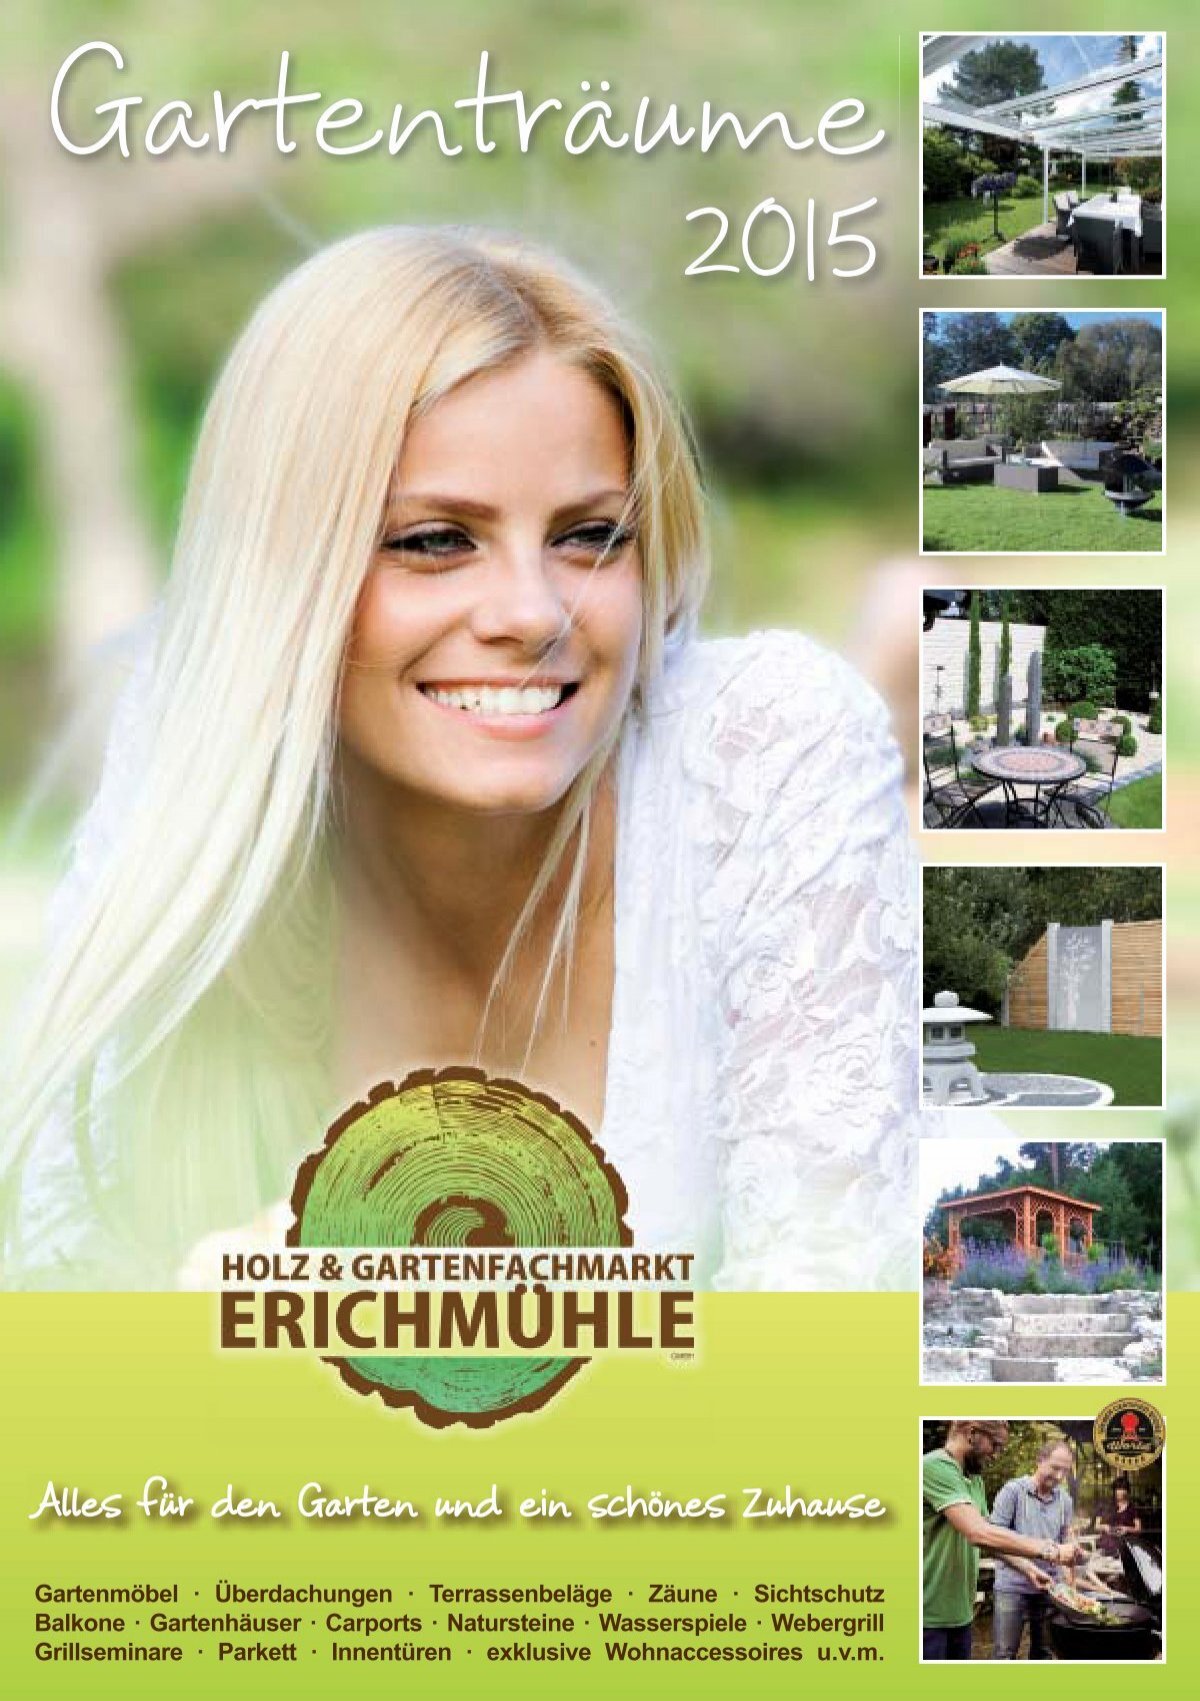 Gartenträume 2015 Gartenfachmarkt - & Erichmühle Holz